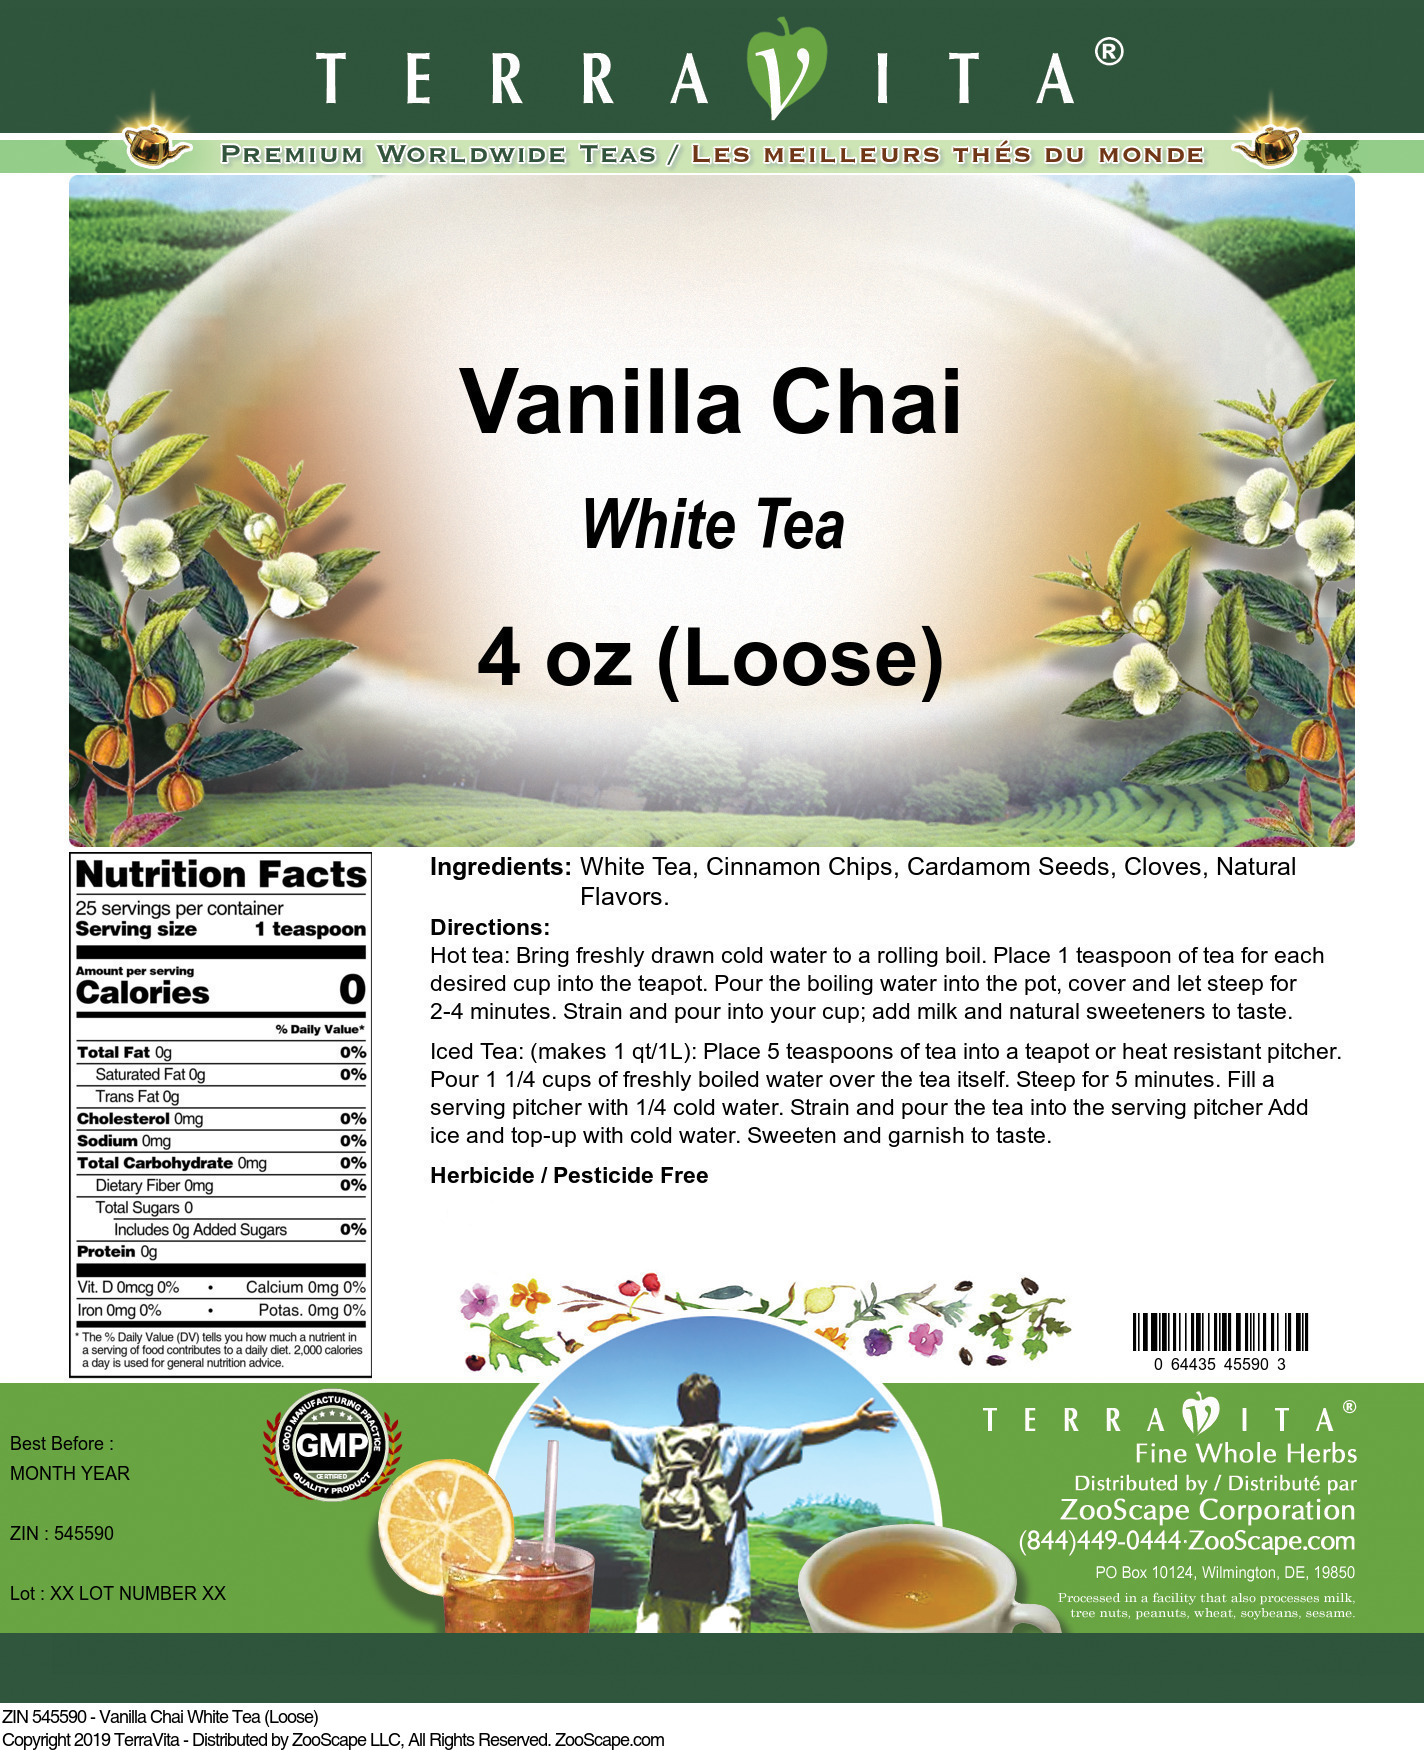 Vanilla Chai White Tea (Loose) - Label